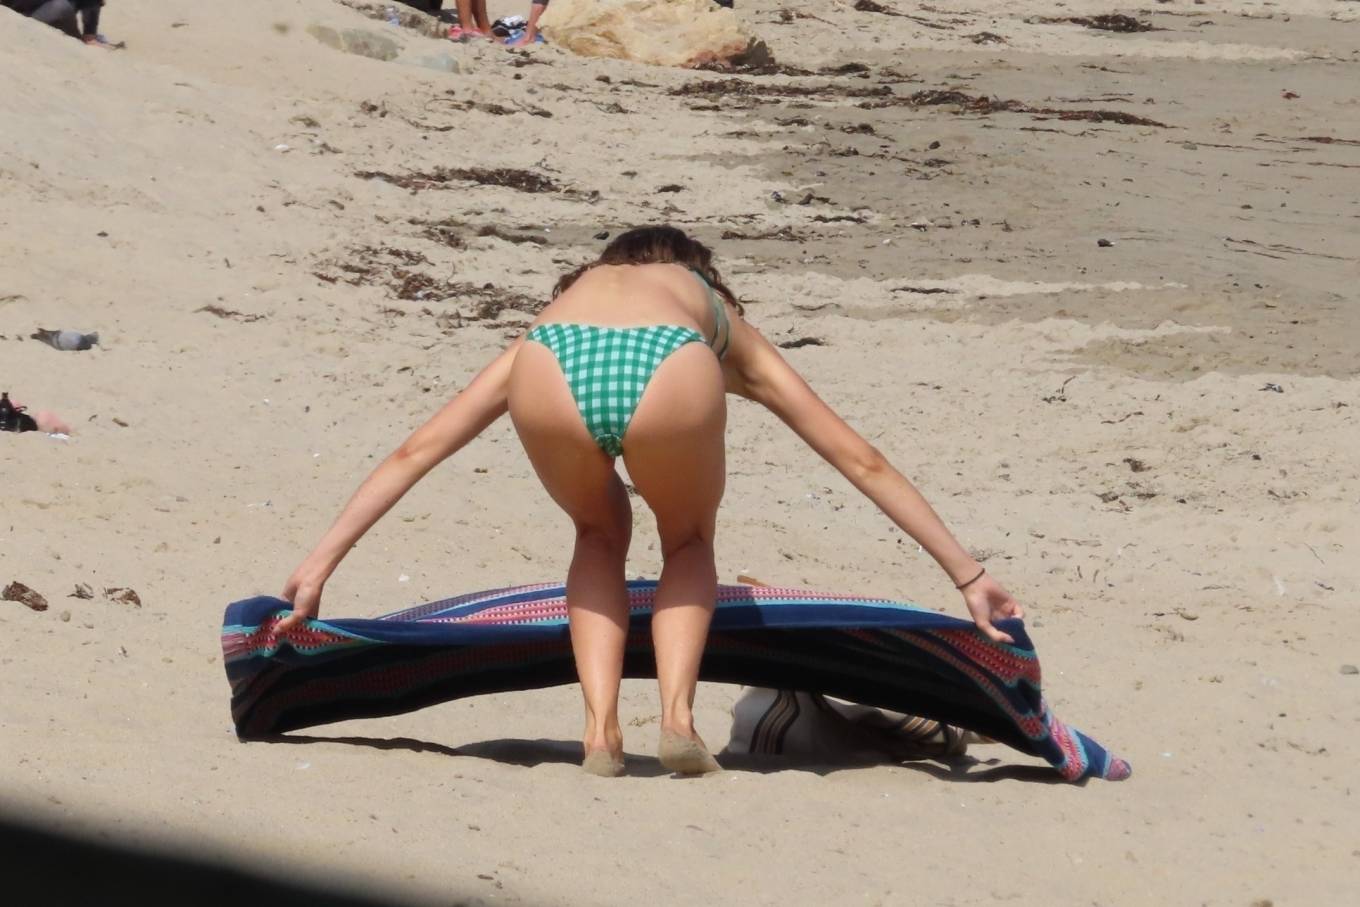 Shailene woodley bikini